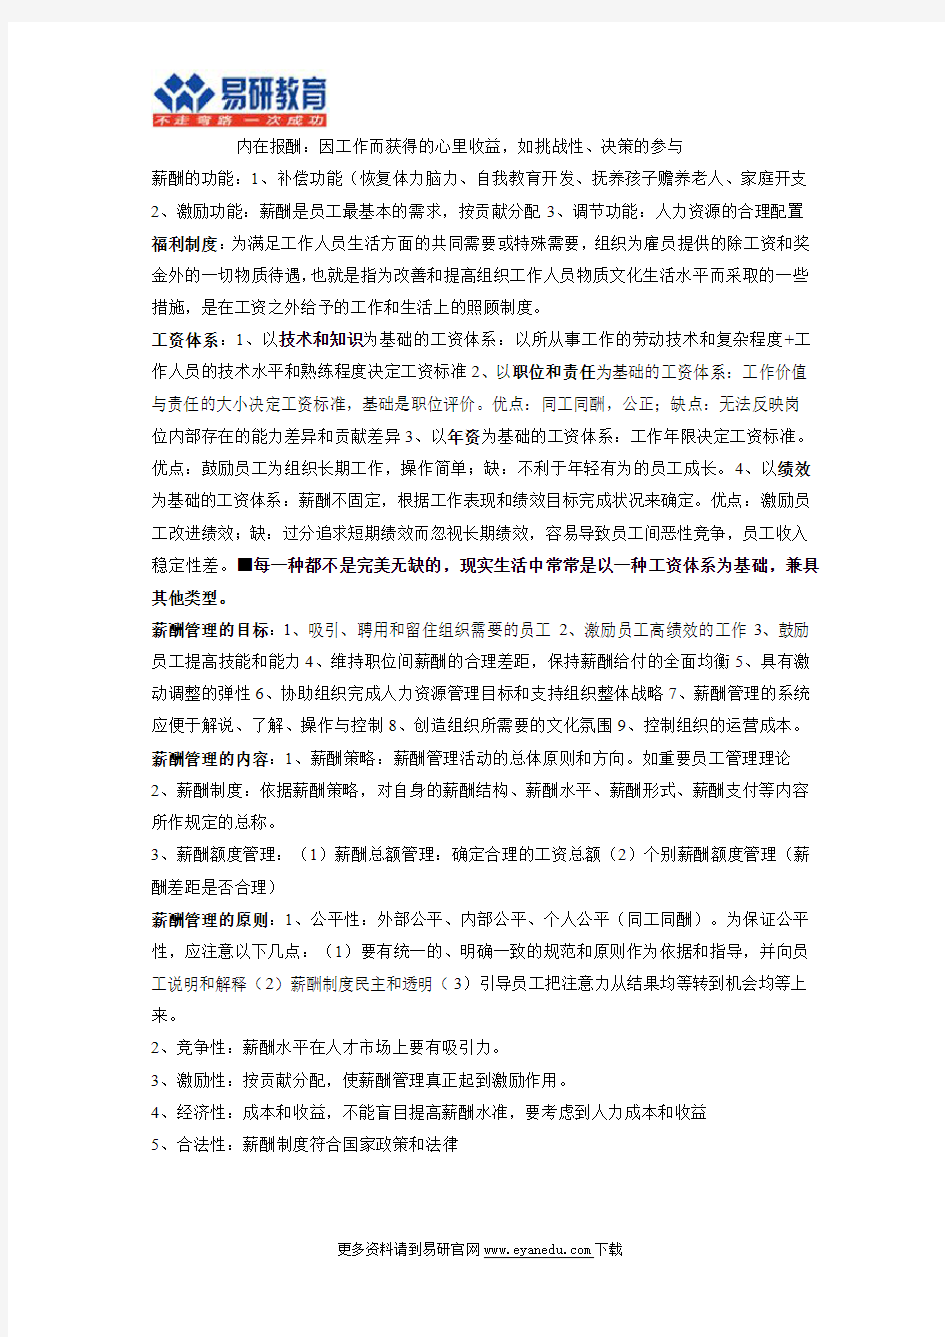 【北京大学行政管理考研】392分牛人专业课笔记(20)